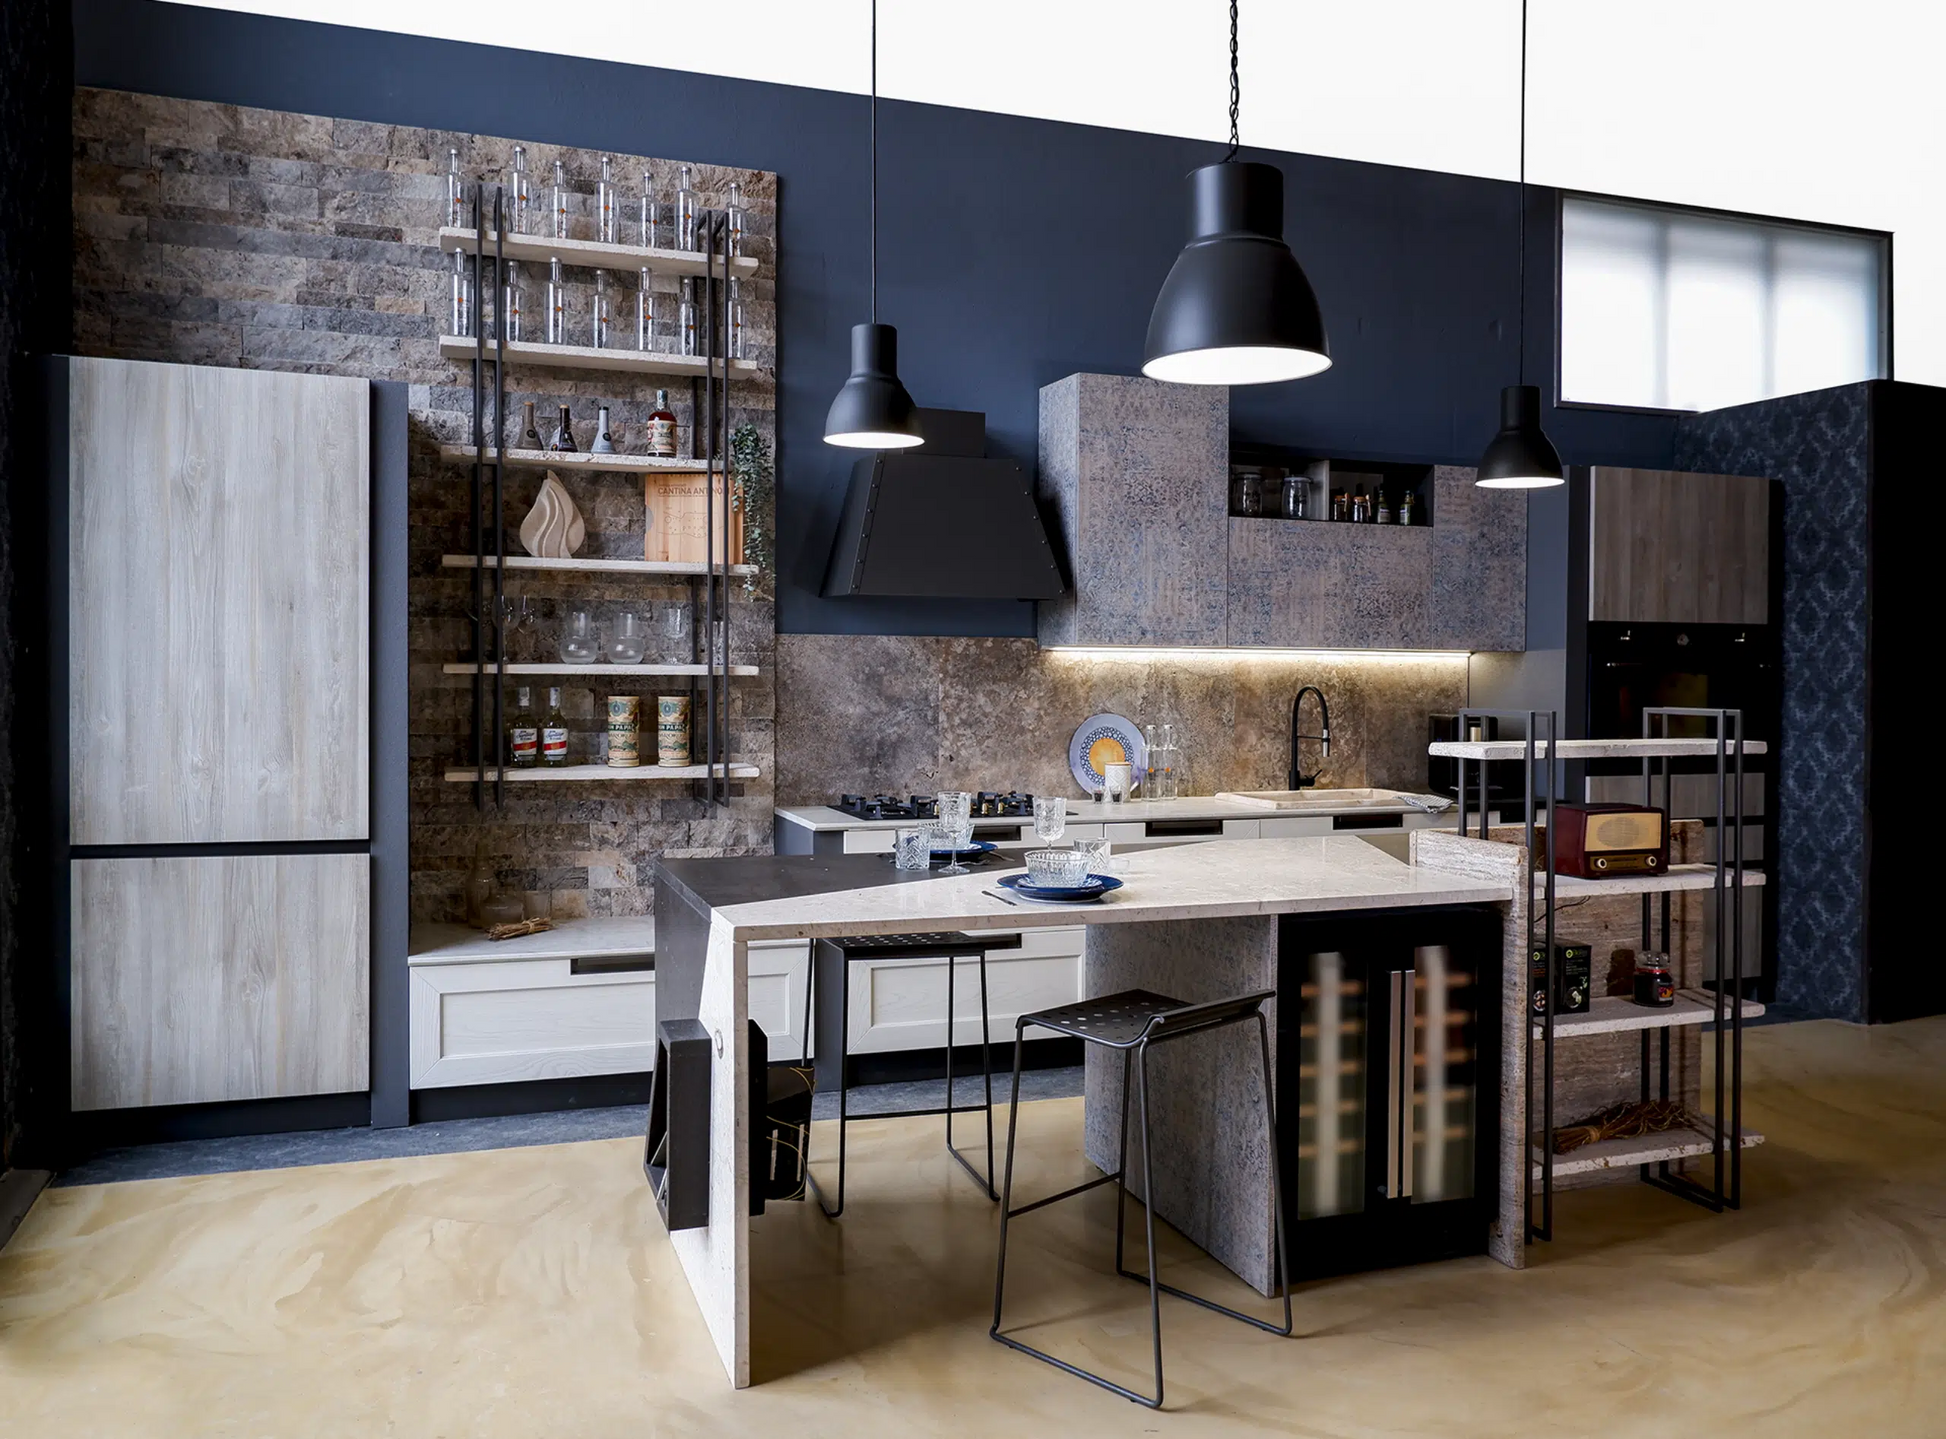 Cucina moderna in stile stone art con dettagli in pietra Marmo Cremaperla, Quarzo e Basalto, ante dei mobili rivestite con effetti legno e tessuto